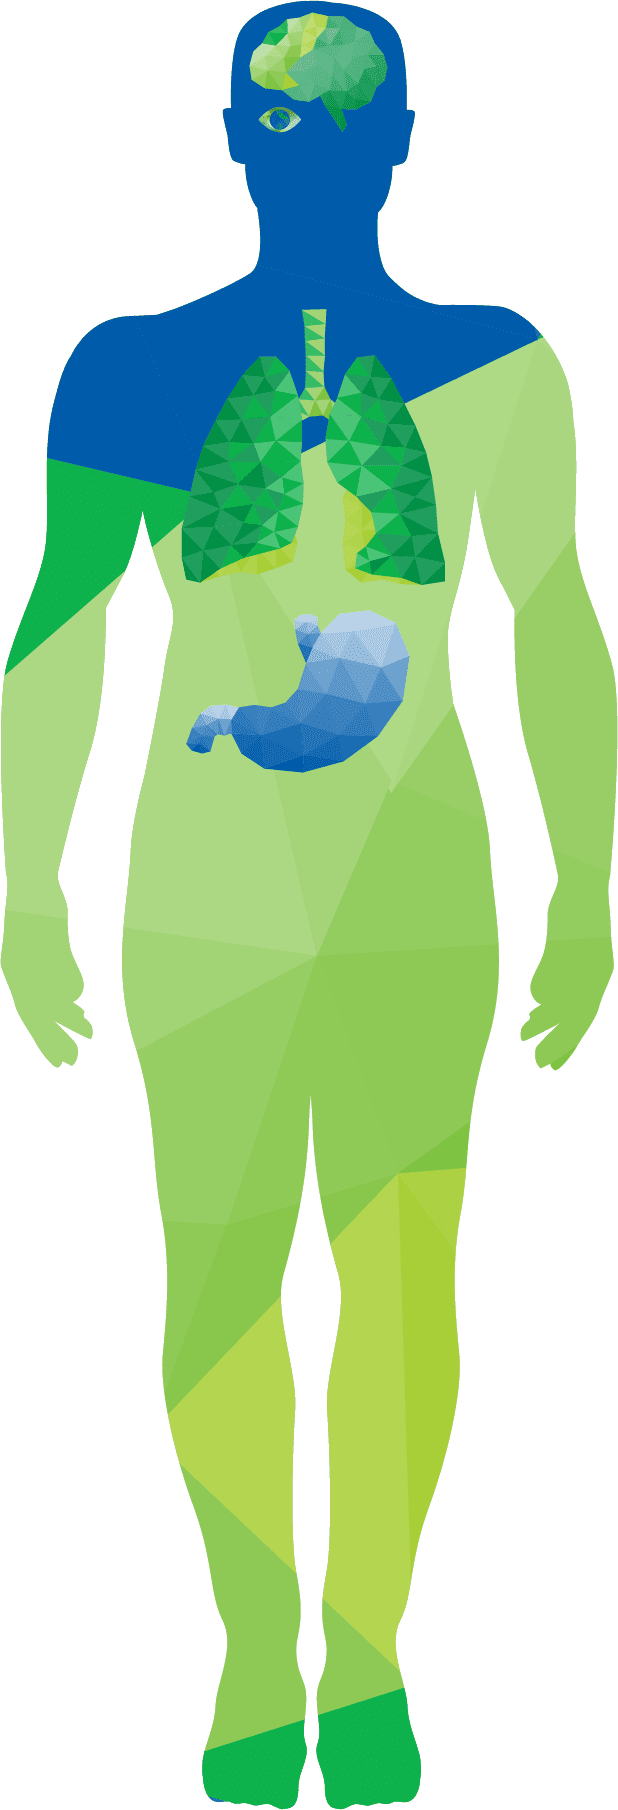 تروميد - رسم توضيحي لجسم الإنسان